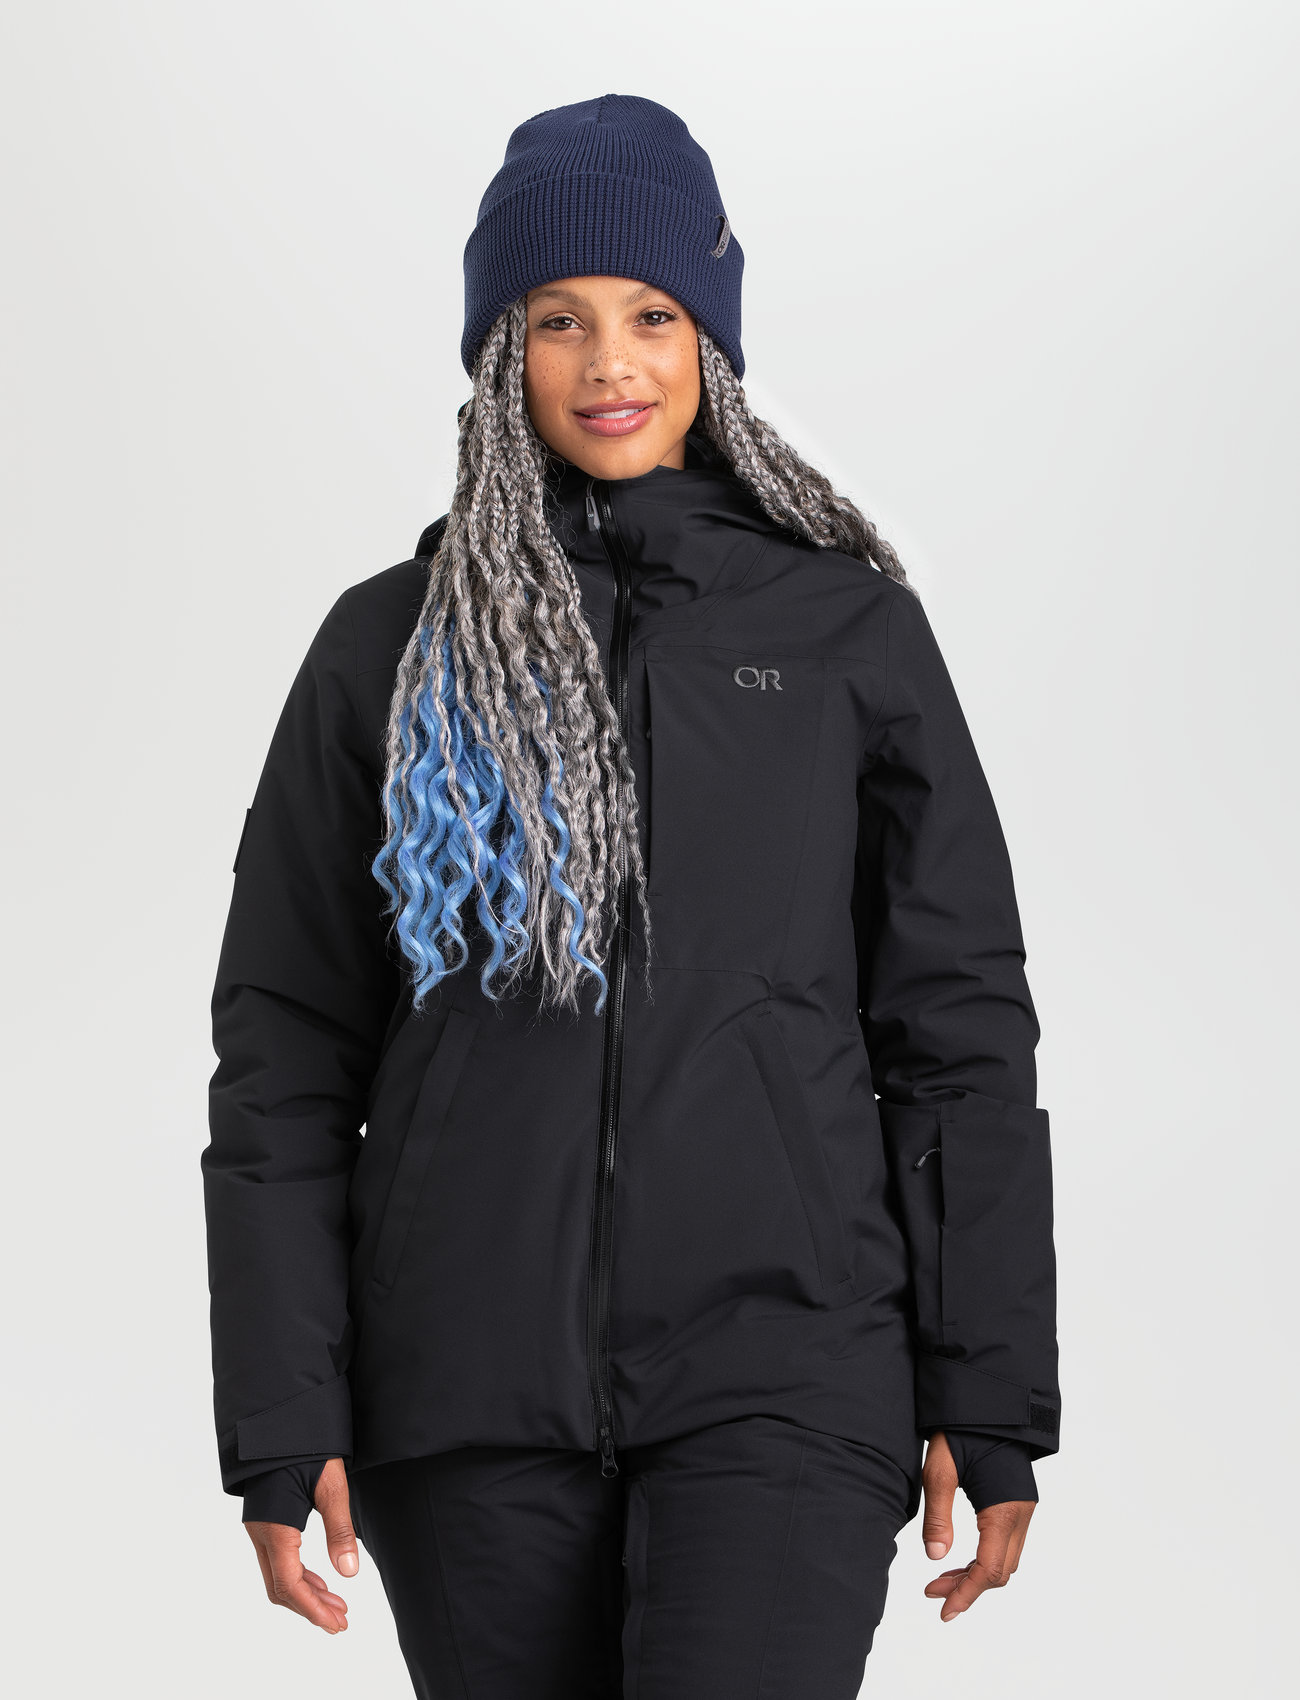 Outdoor Research - W SNOWCREW JKT - vestes d'extérieur et de pluie - black - 0